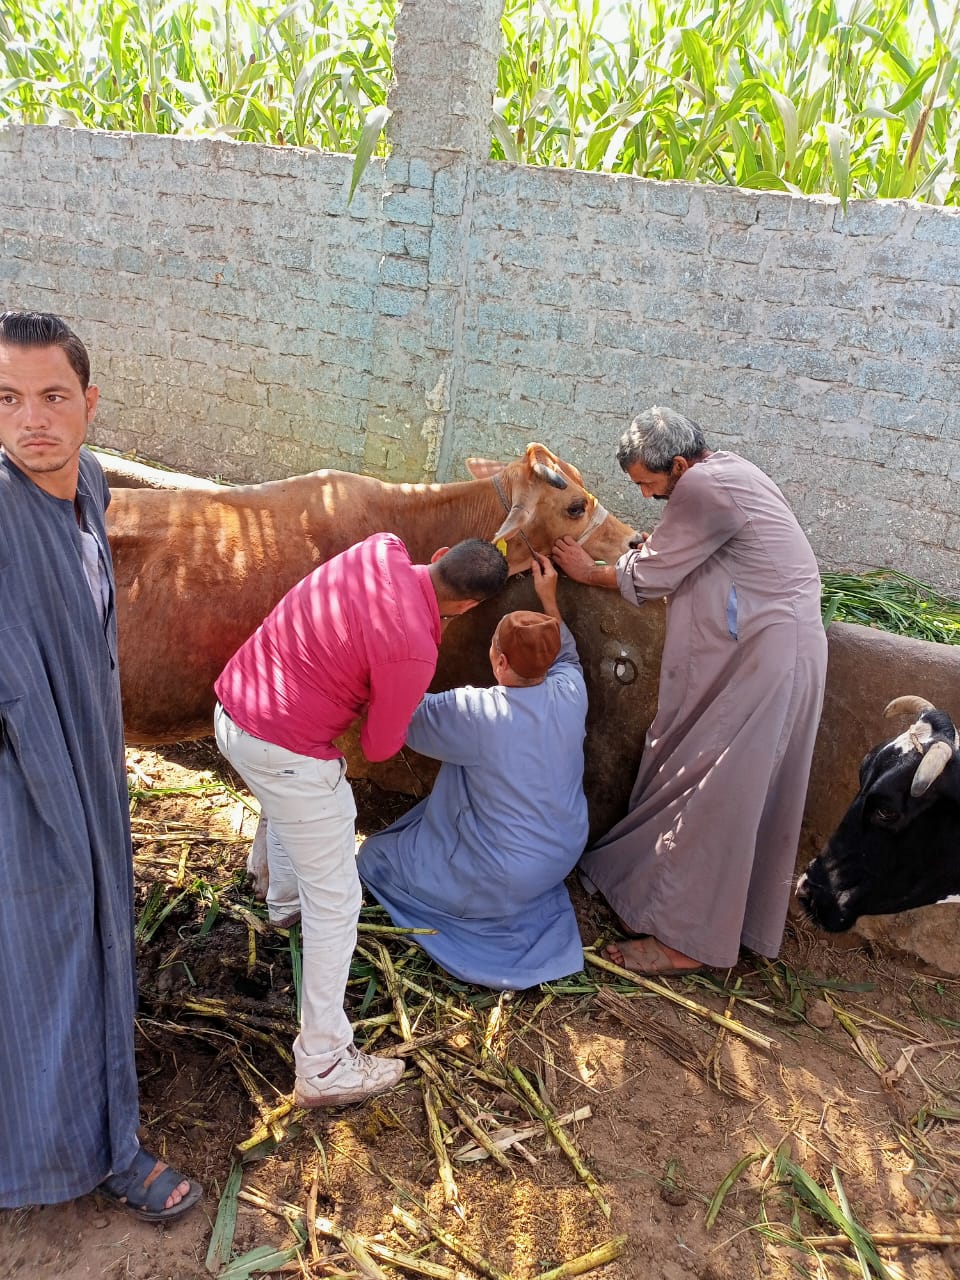 رش وتحصين 1259 رأس ماشية ضد الطفيليات الداخلية والديدان خلال قافلة بيطرية بالجيزة